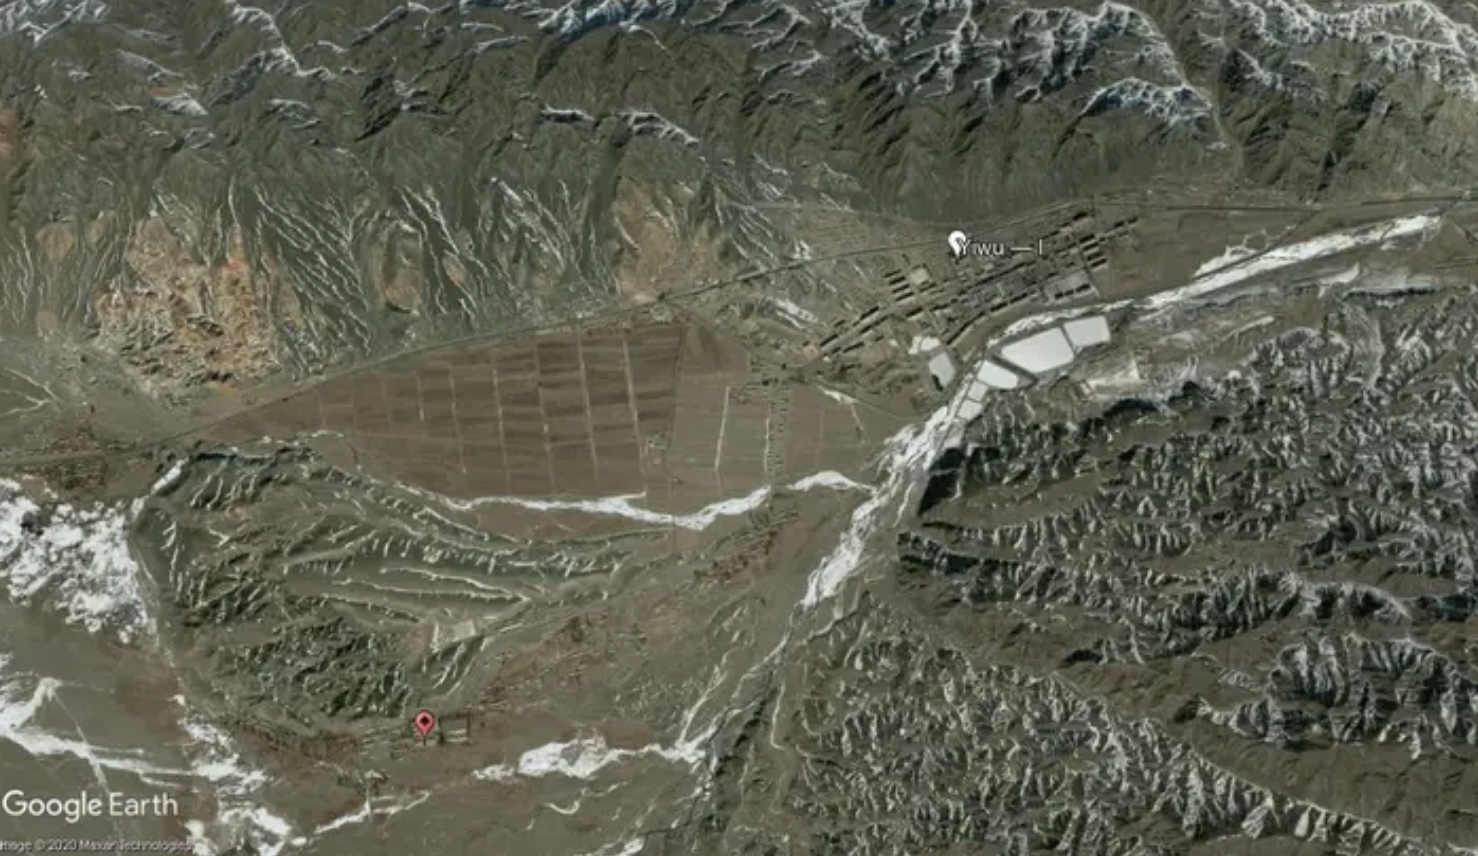 Image courtesy of Google Earth. China, 2006.